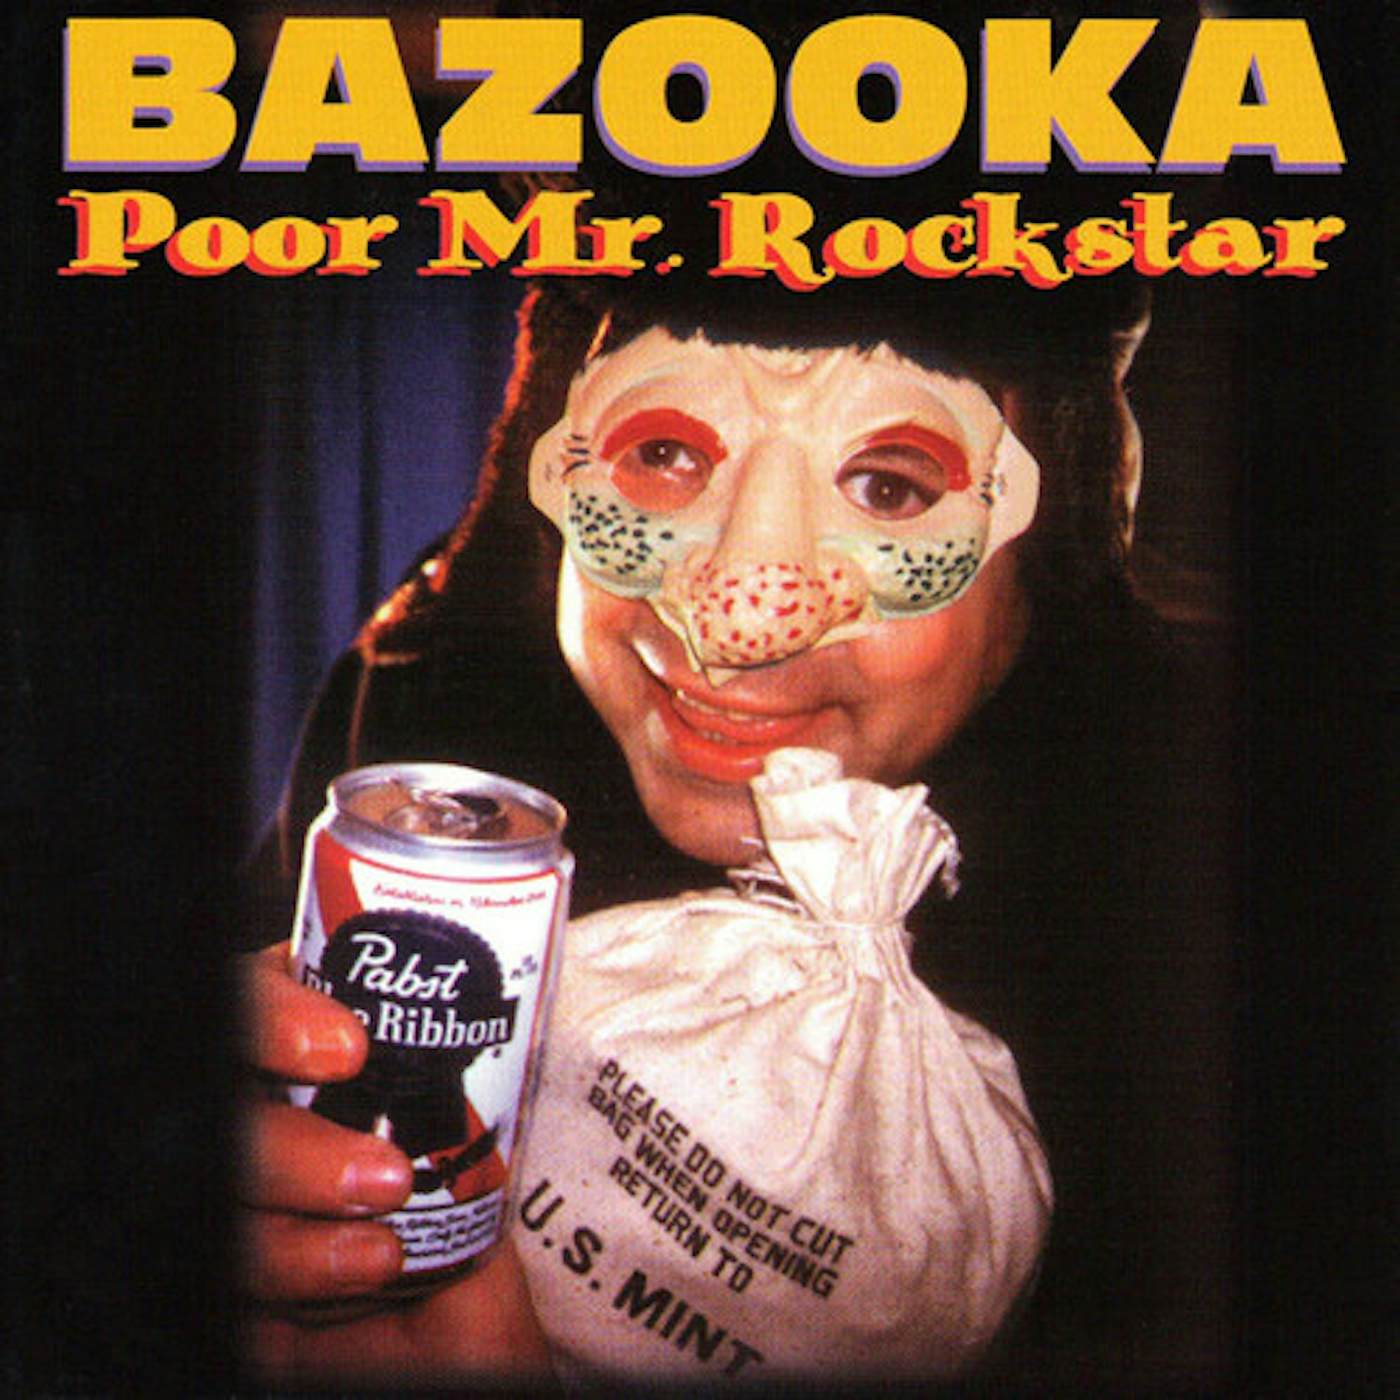 Bazooka POOR MR. ROCKSTAR CD